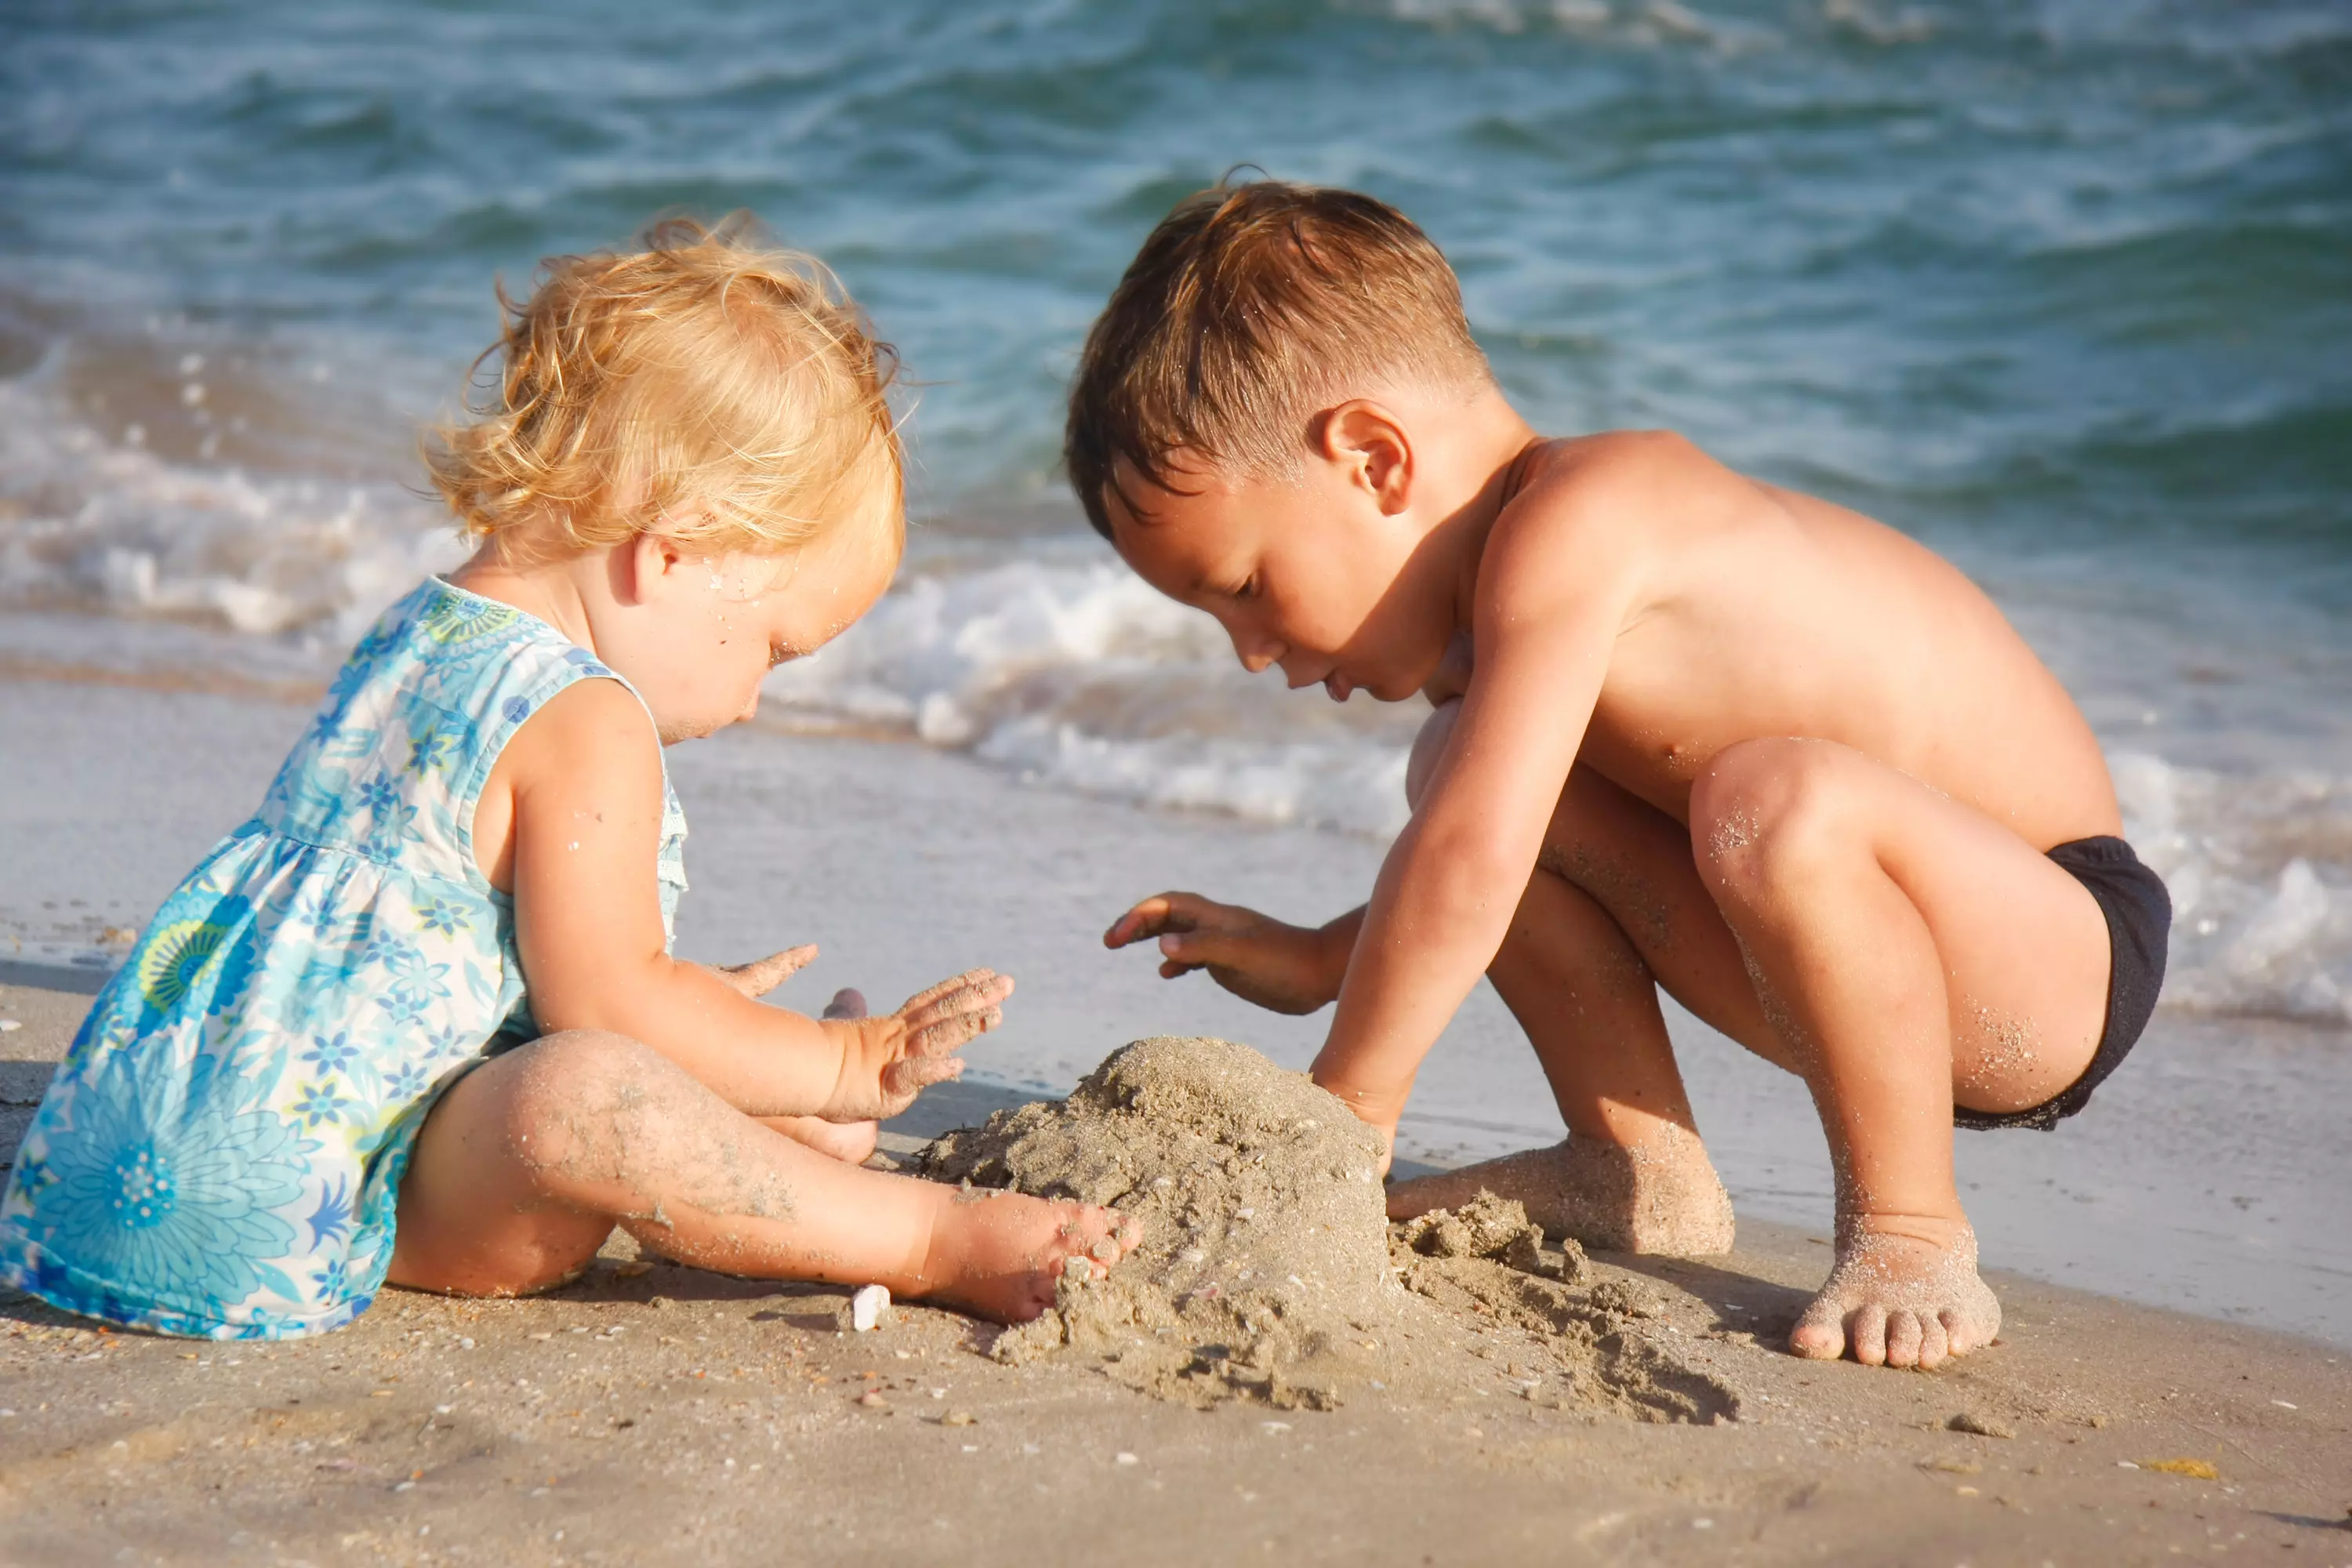 לא רק על חוף הים. המשחק בחול יכול ללמד הרבה על המקום הלא מודע בו מצוי הילד